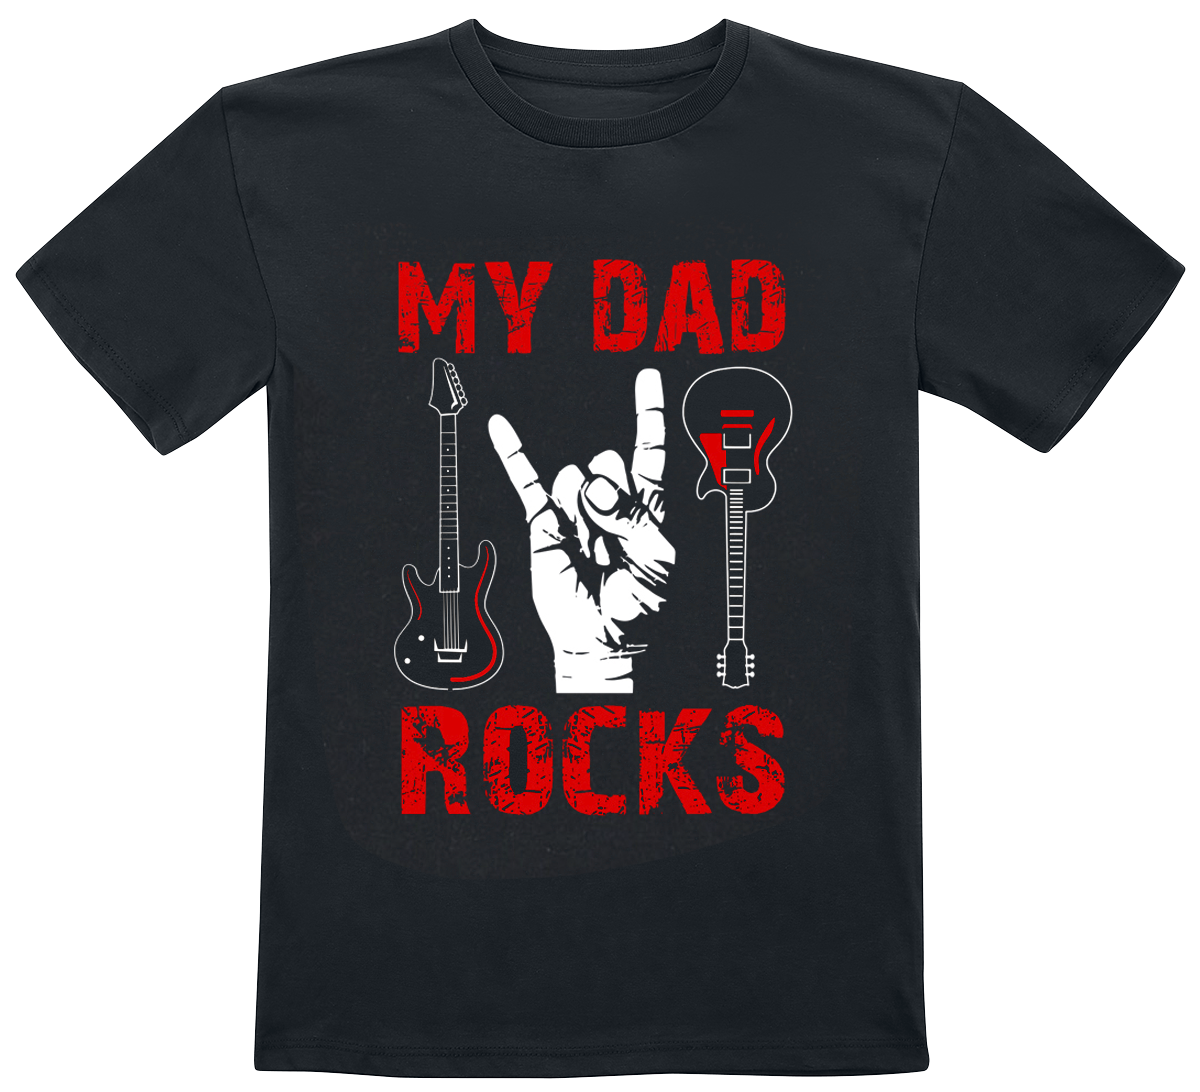 Familie & Freunde - My Dad Rocks - Kids - My Dad Rocks - T-Shirt - schwarz - EMP Exklusiv!